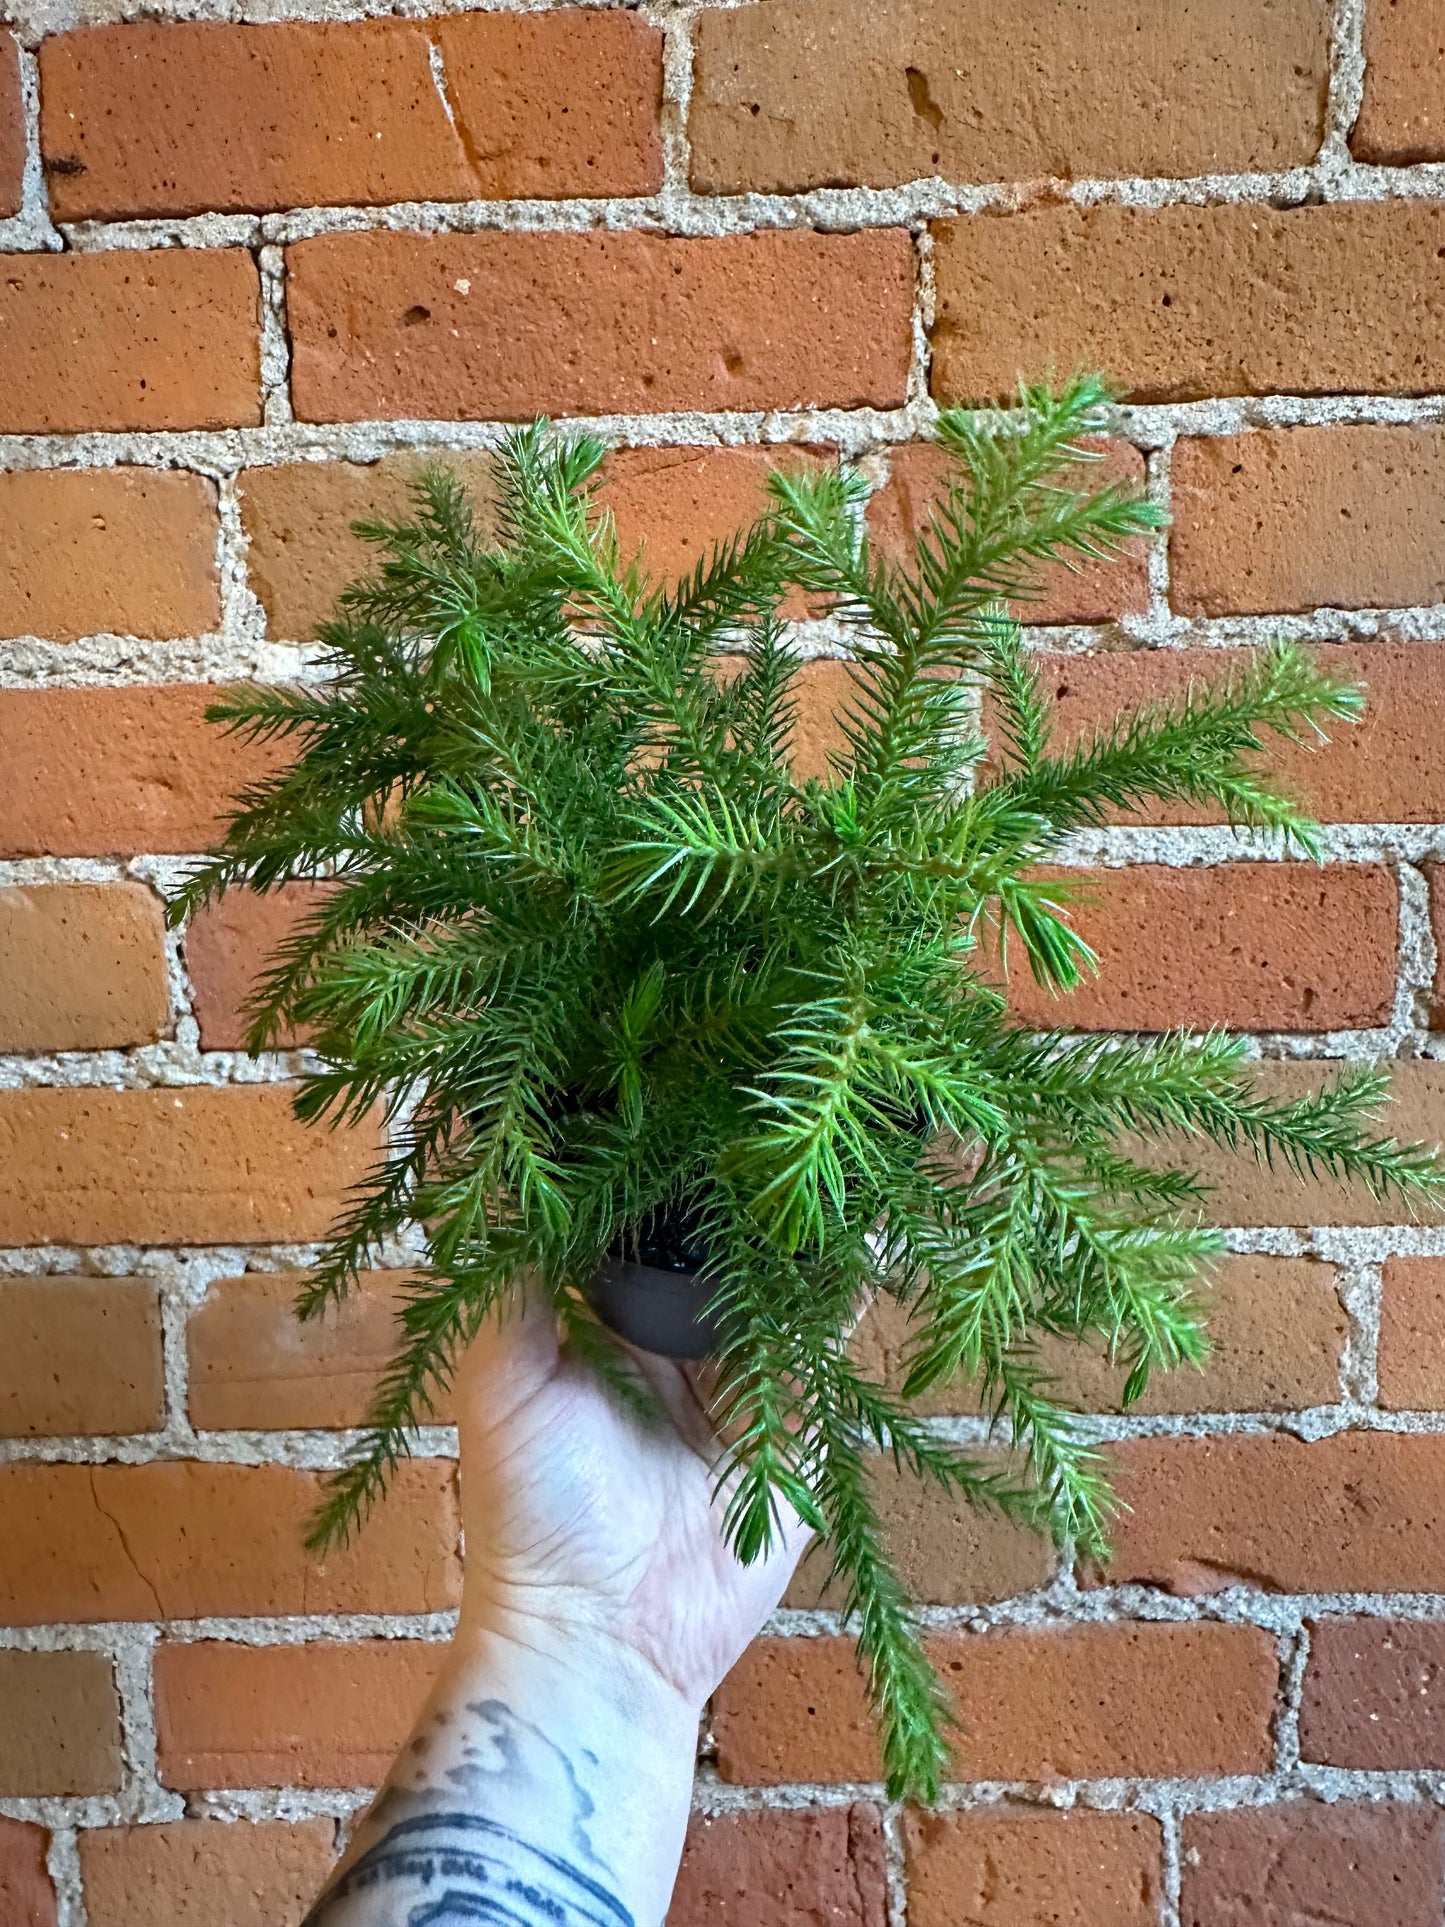 4" Norfolk Pine